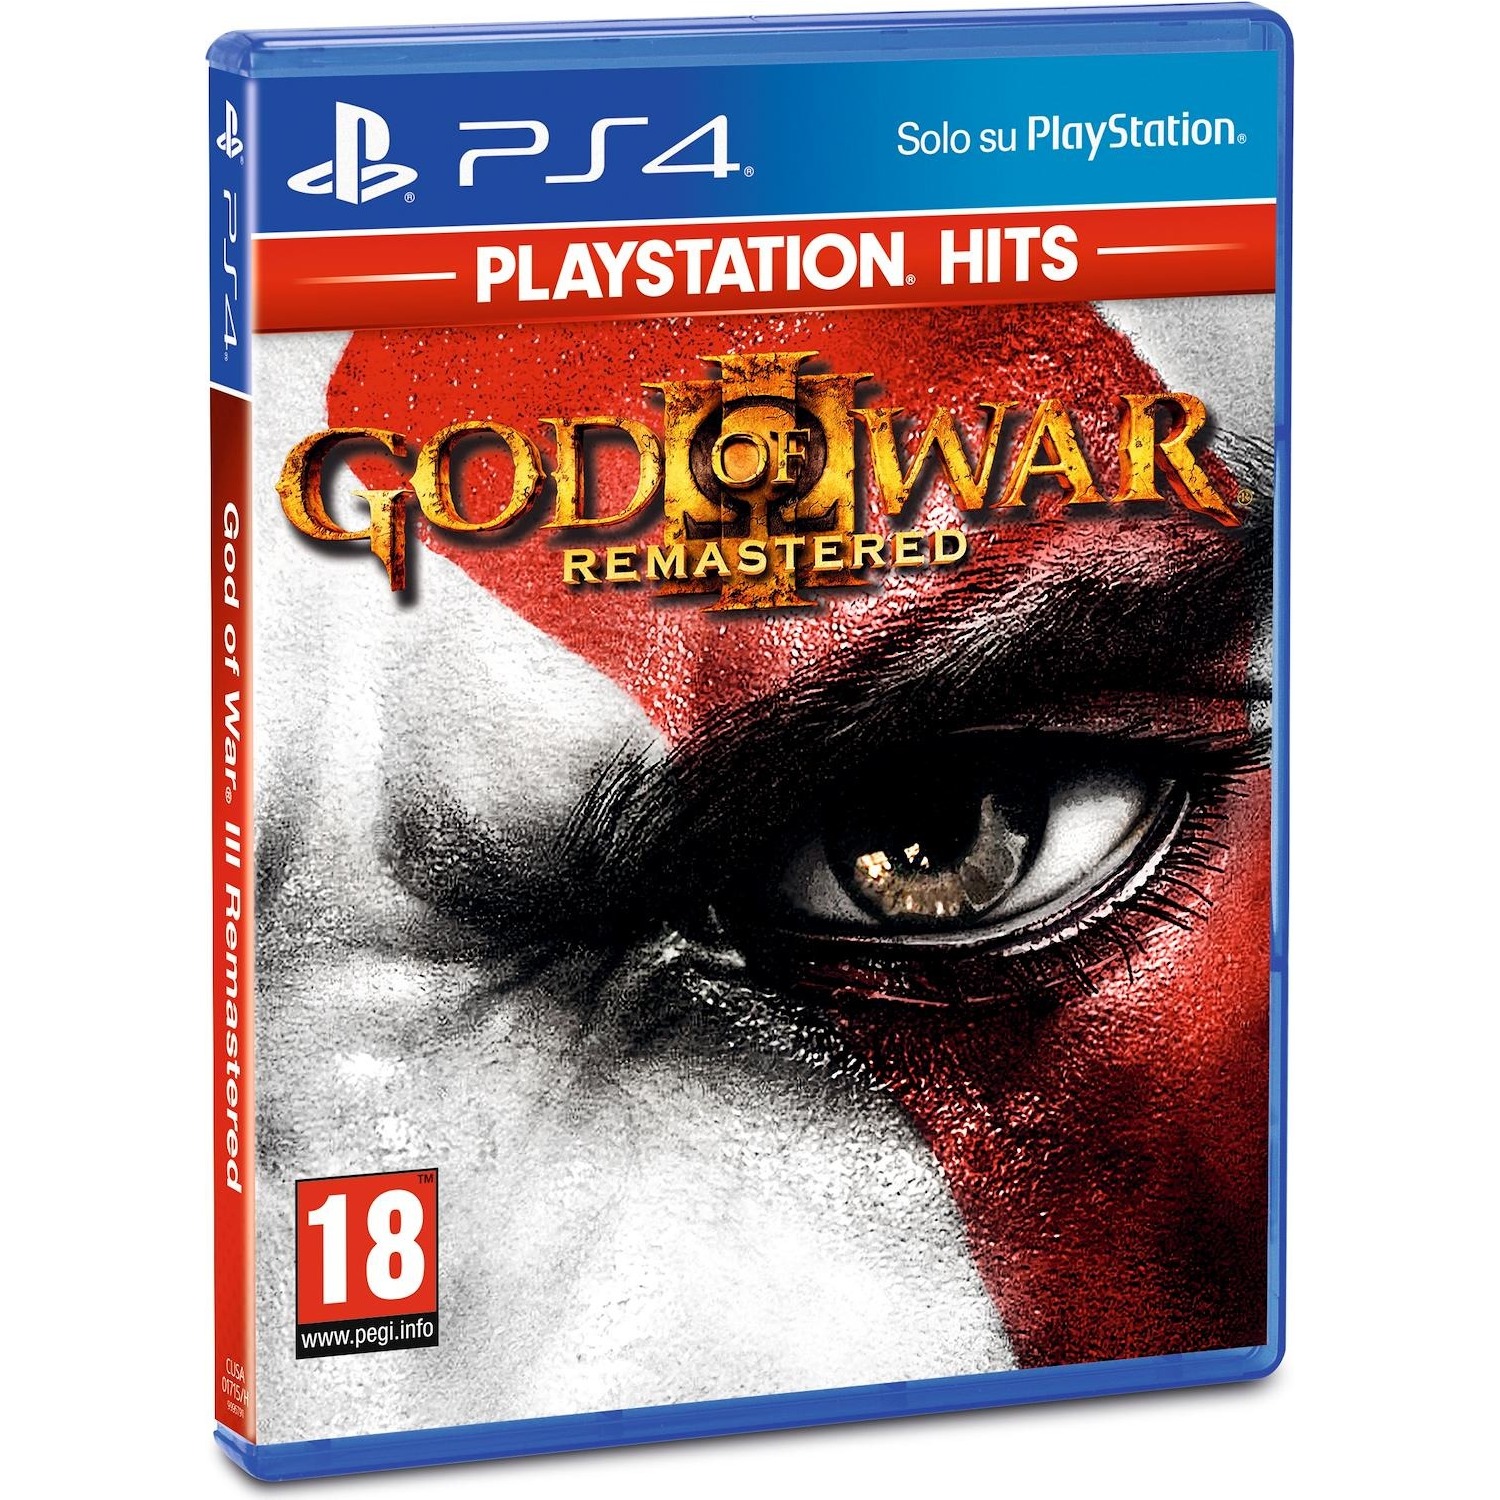 Immagine per Gioco PS4 God of War 3 Remastered "HITS" da DIMOStore